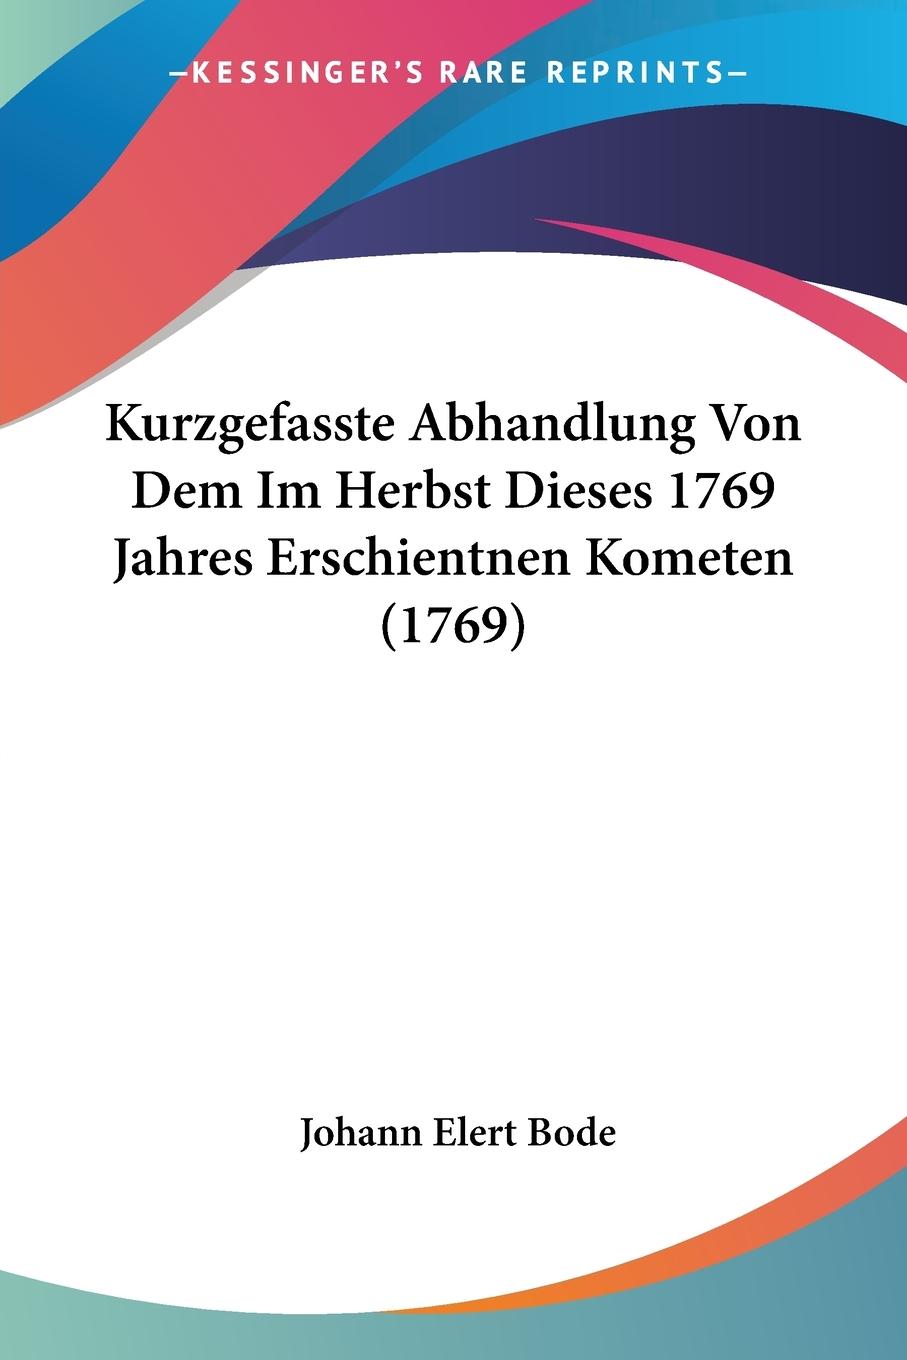 Kurzgefasste Abhandlung Von Dem Im Herbst Dieses 1769 Jahres Erschientnen Kometen (1769) - Bode, Johann Elert